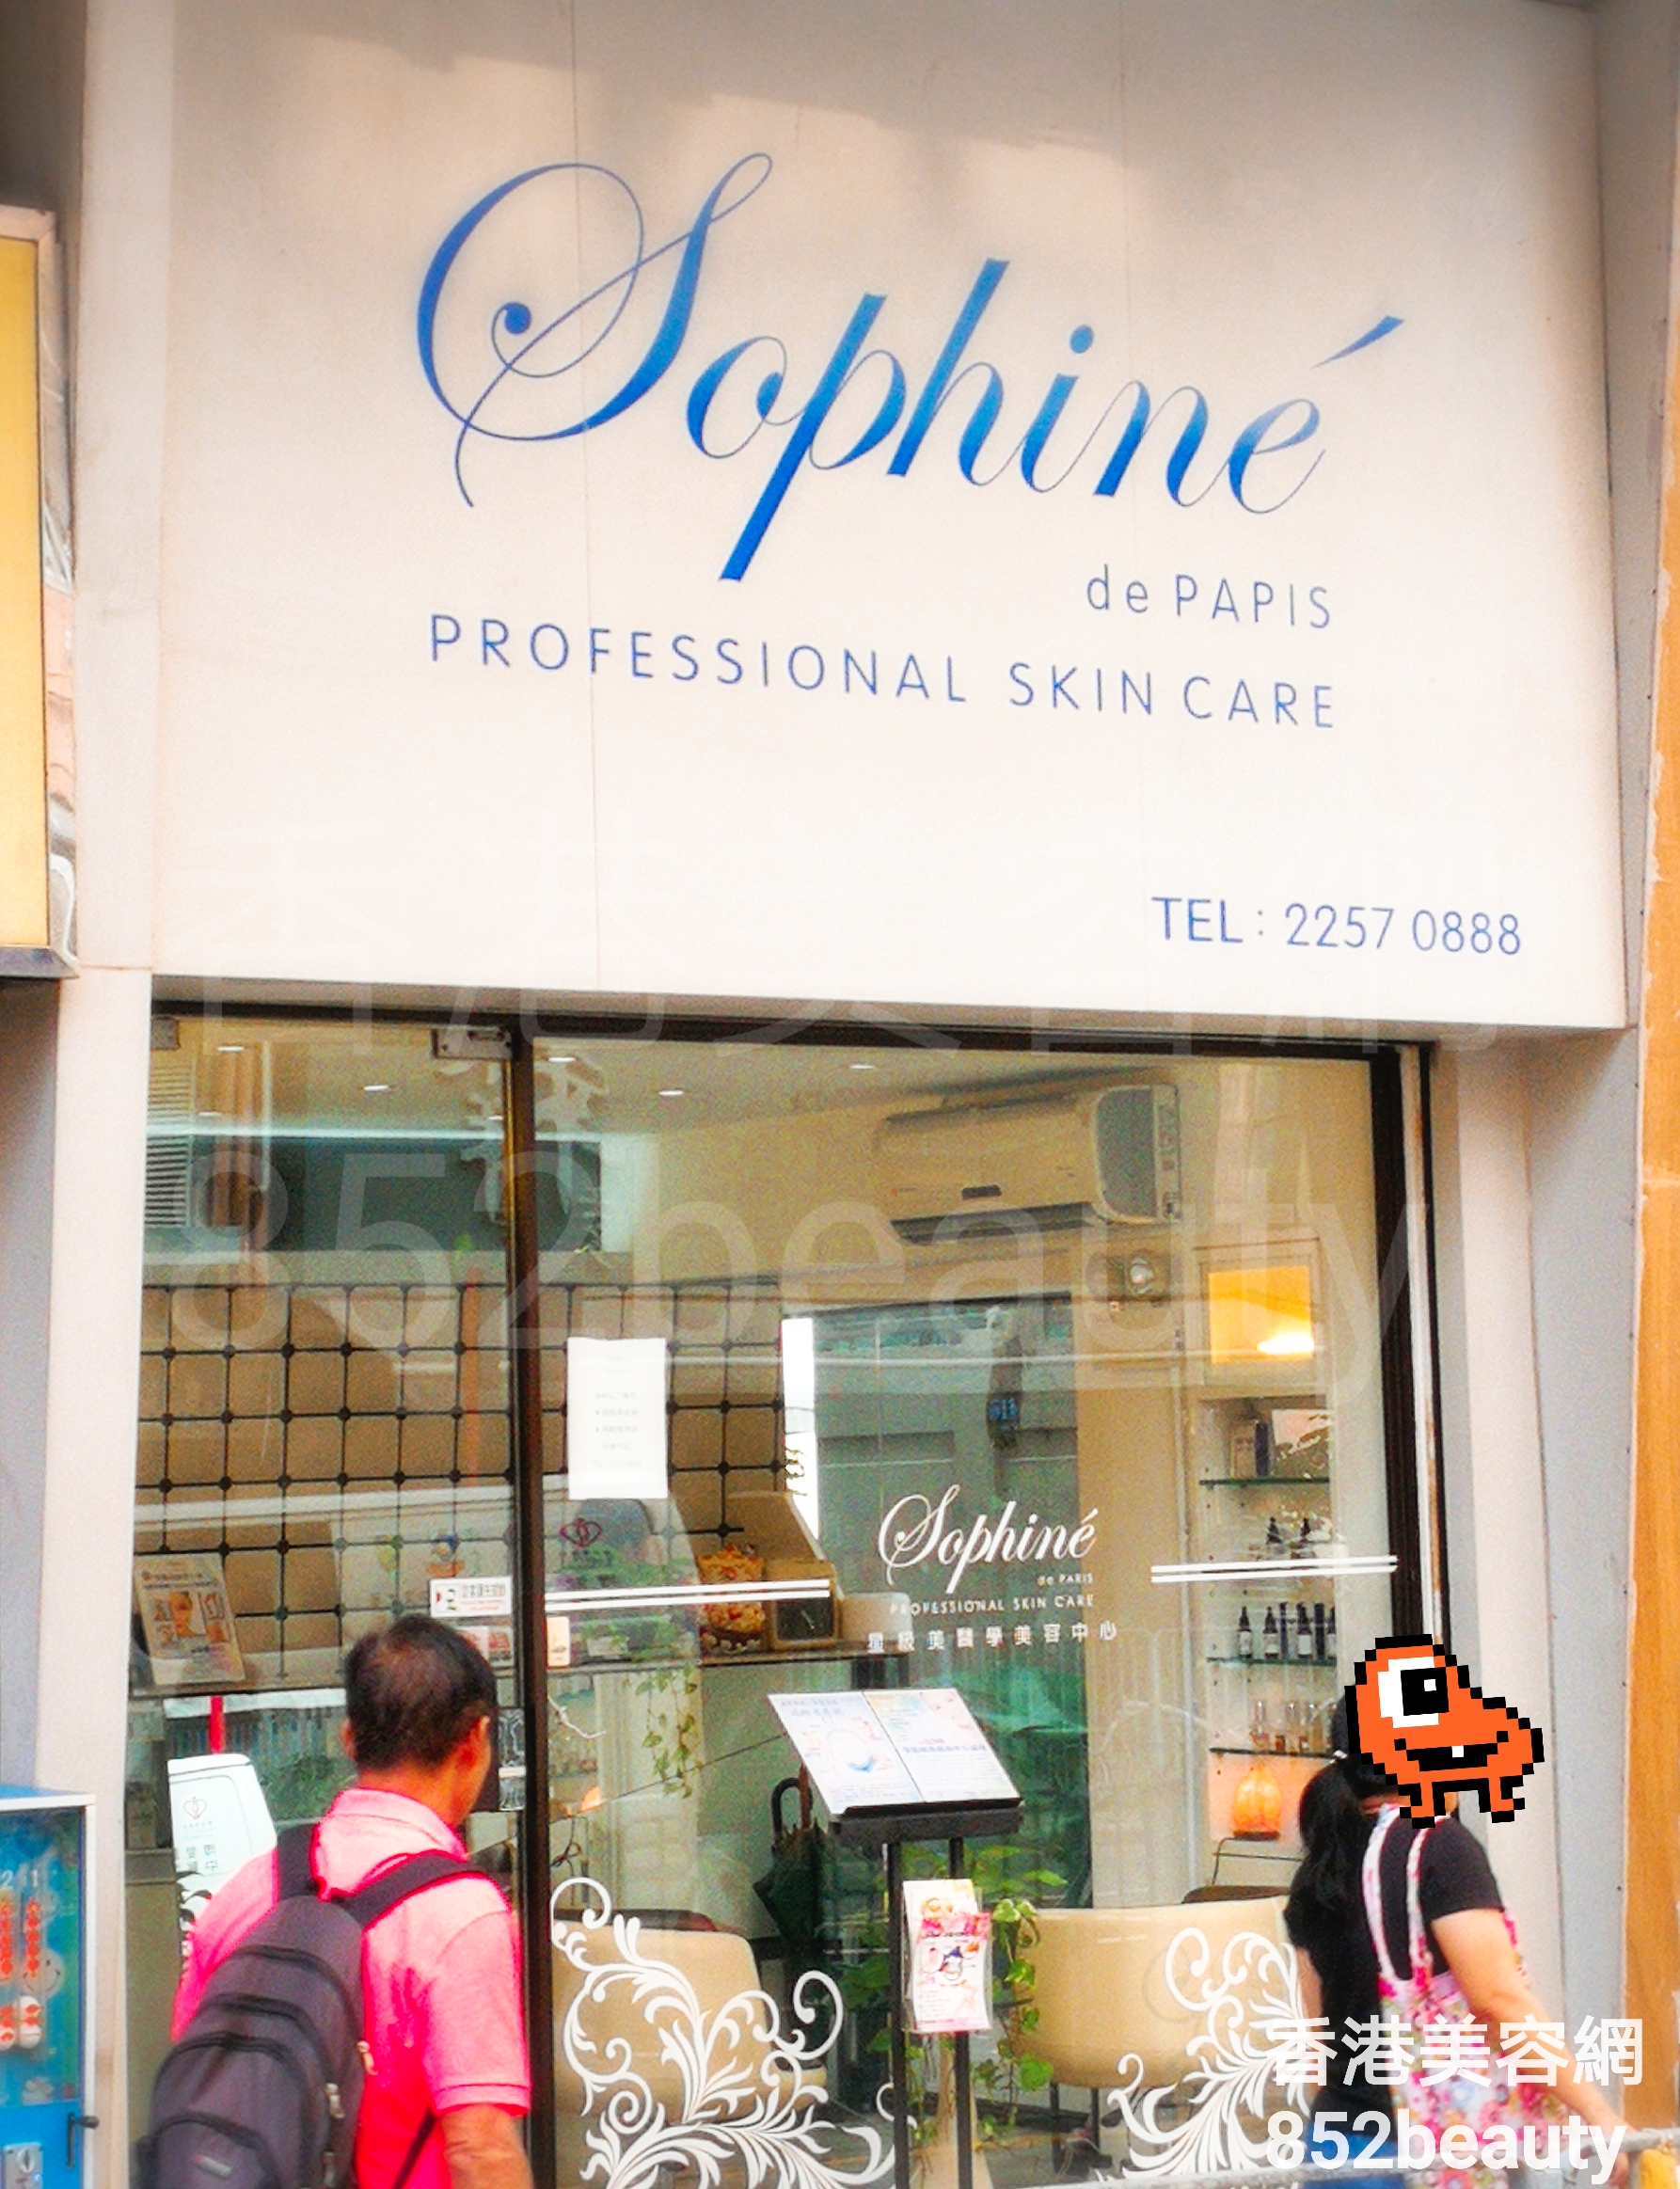 Medical Aesthetics: Sophine de PARIS 星級美醫學美容中心